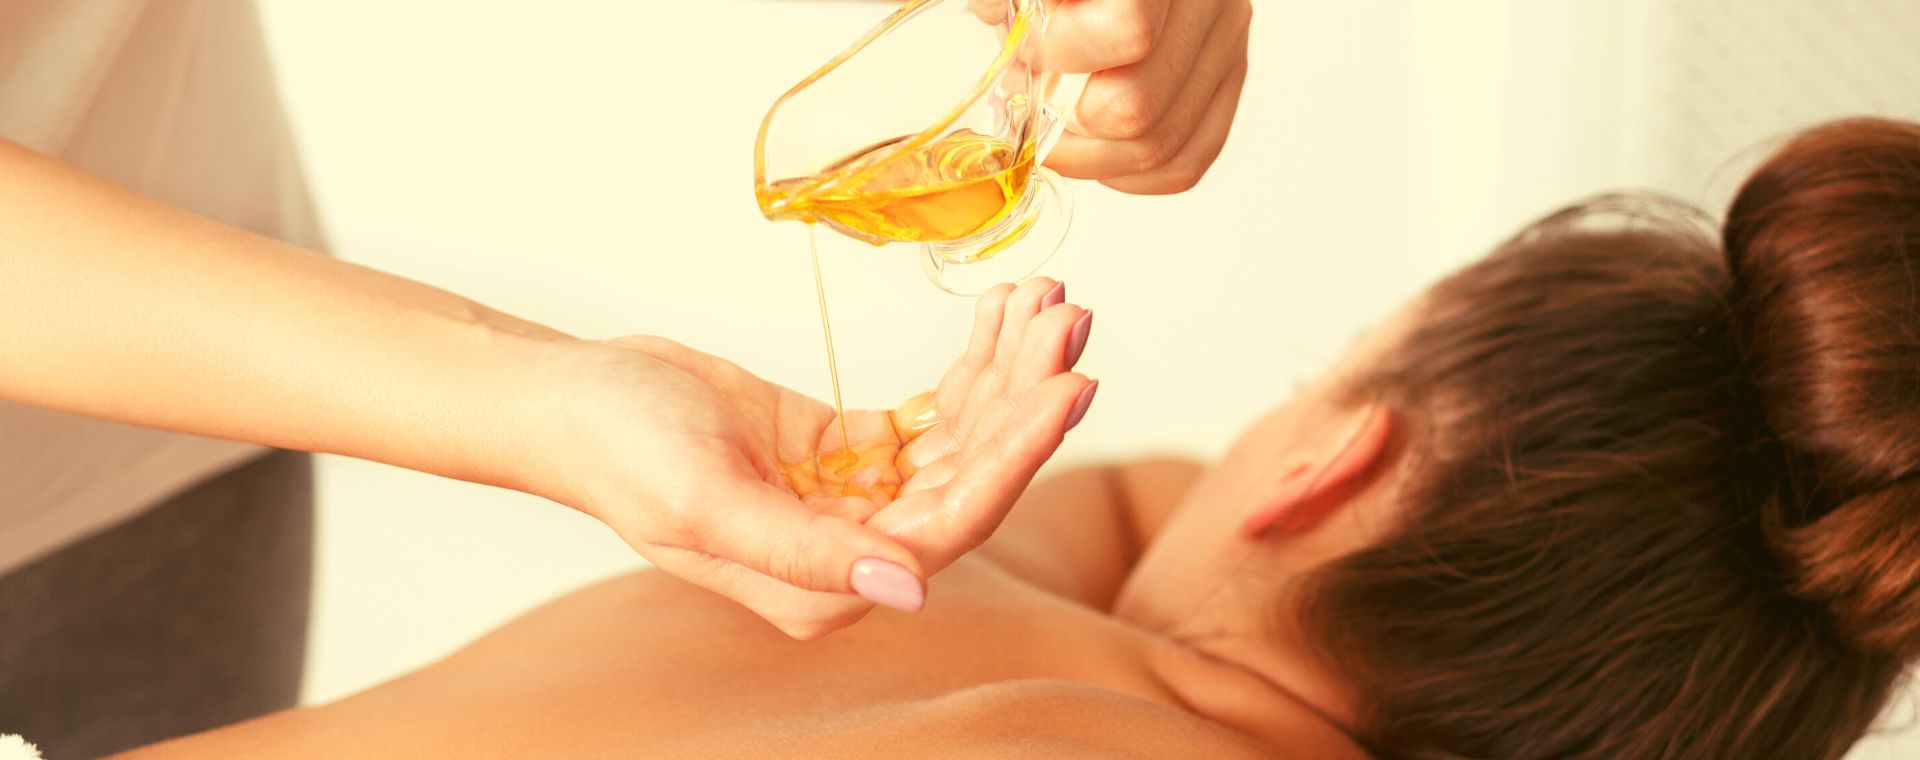 Massage 5 continents aux huiles essentielles